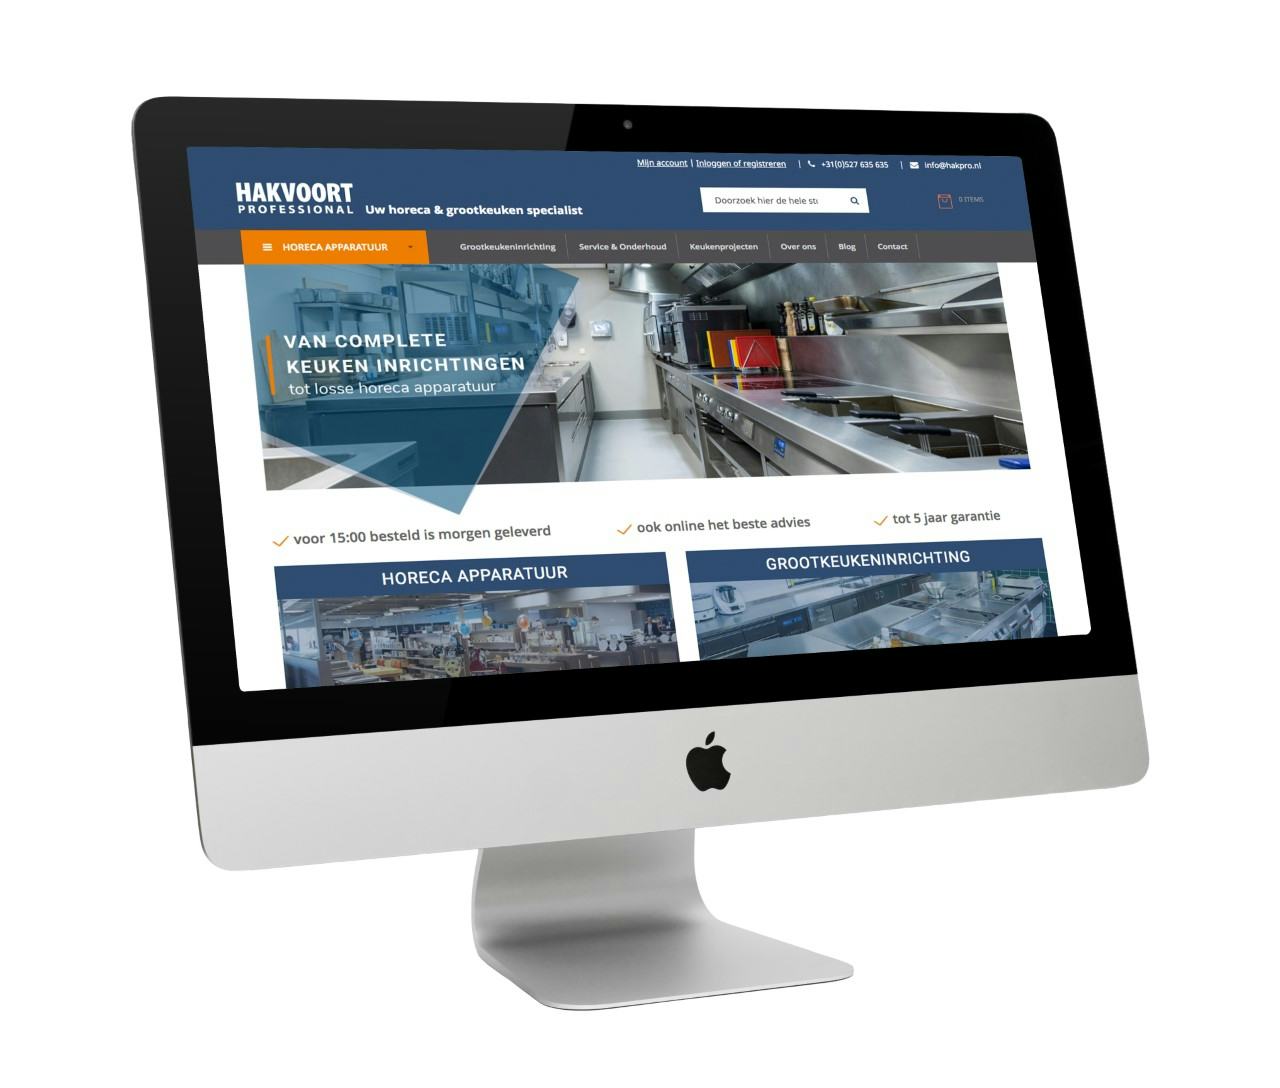 Hakvoort Professional lanceert nieuwe website